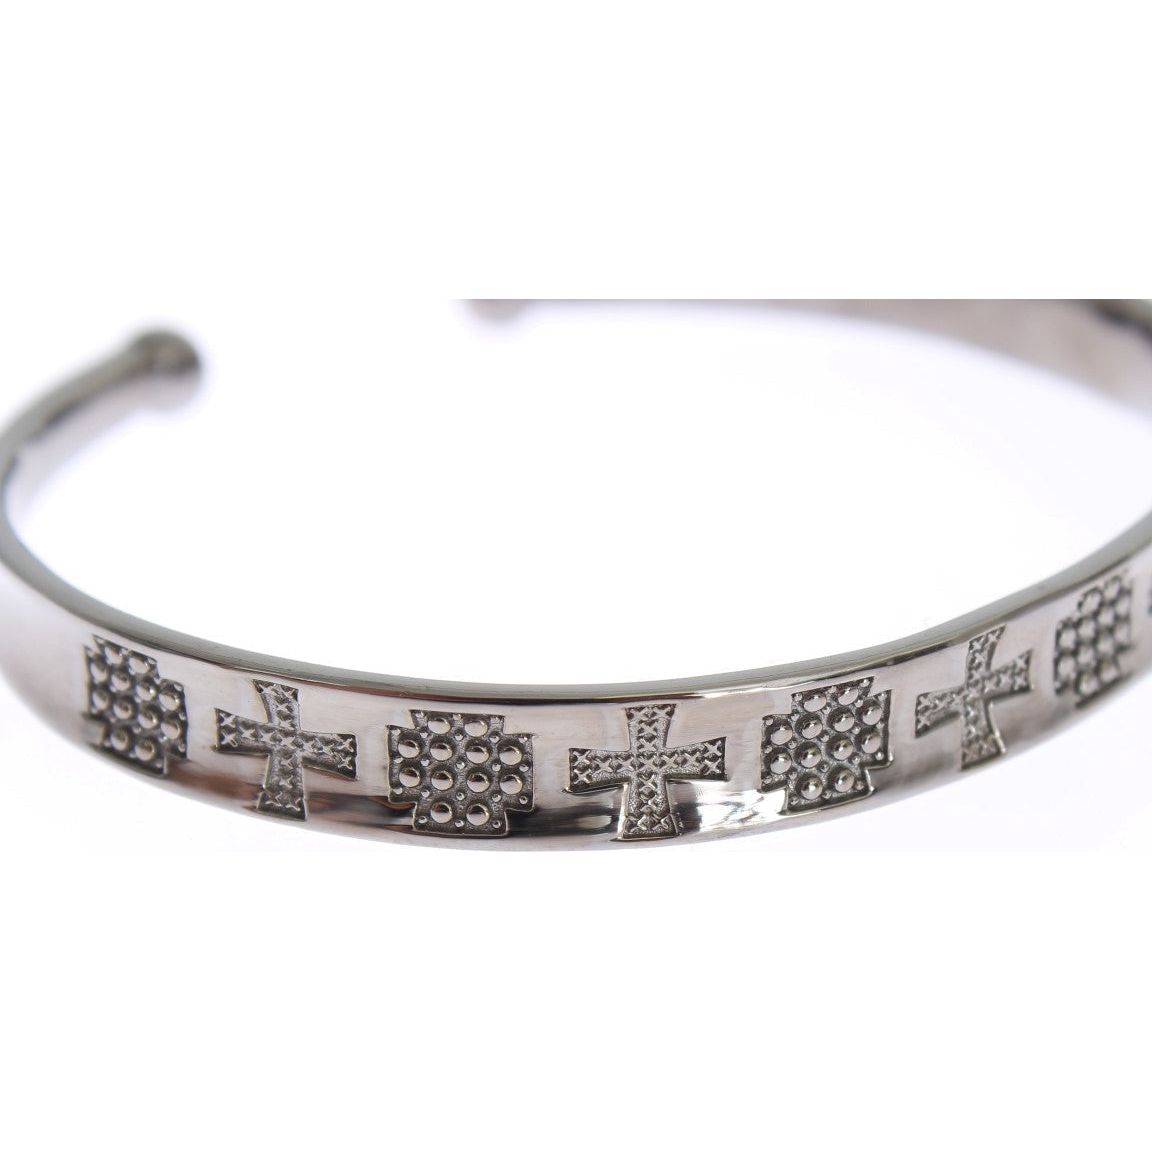 Nialaya Elegant Rhodium Silver Bangle Bracelet gray-rhodium-925-silver-bangle-bracelet 311038-gray-rhodium-925-silver-bangle-bracelet-2_4570fc58-fcd3-41a2-83e0-1bacc6ff1606.jpg